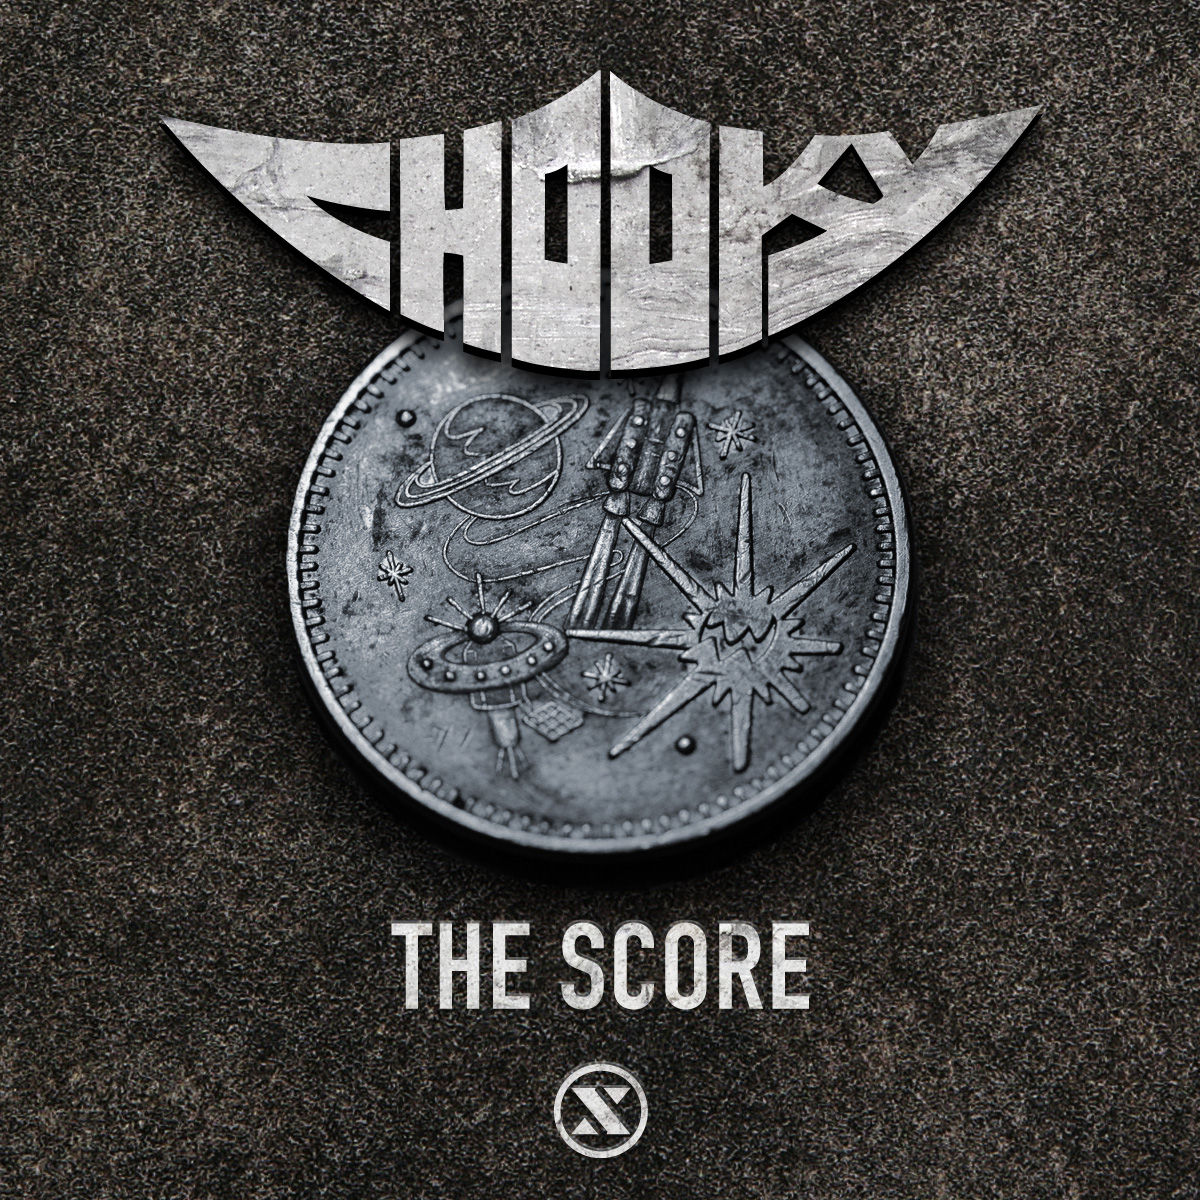 Chooky - The Score